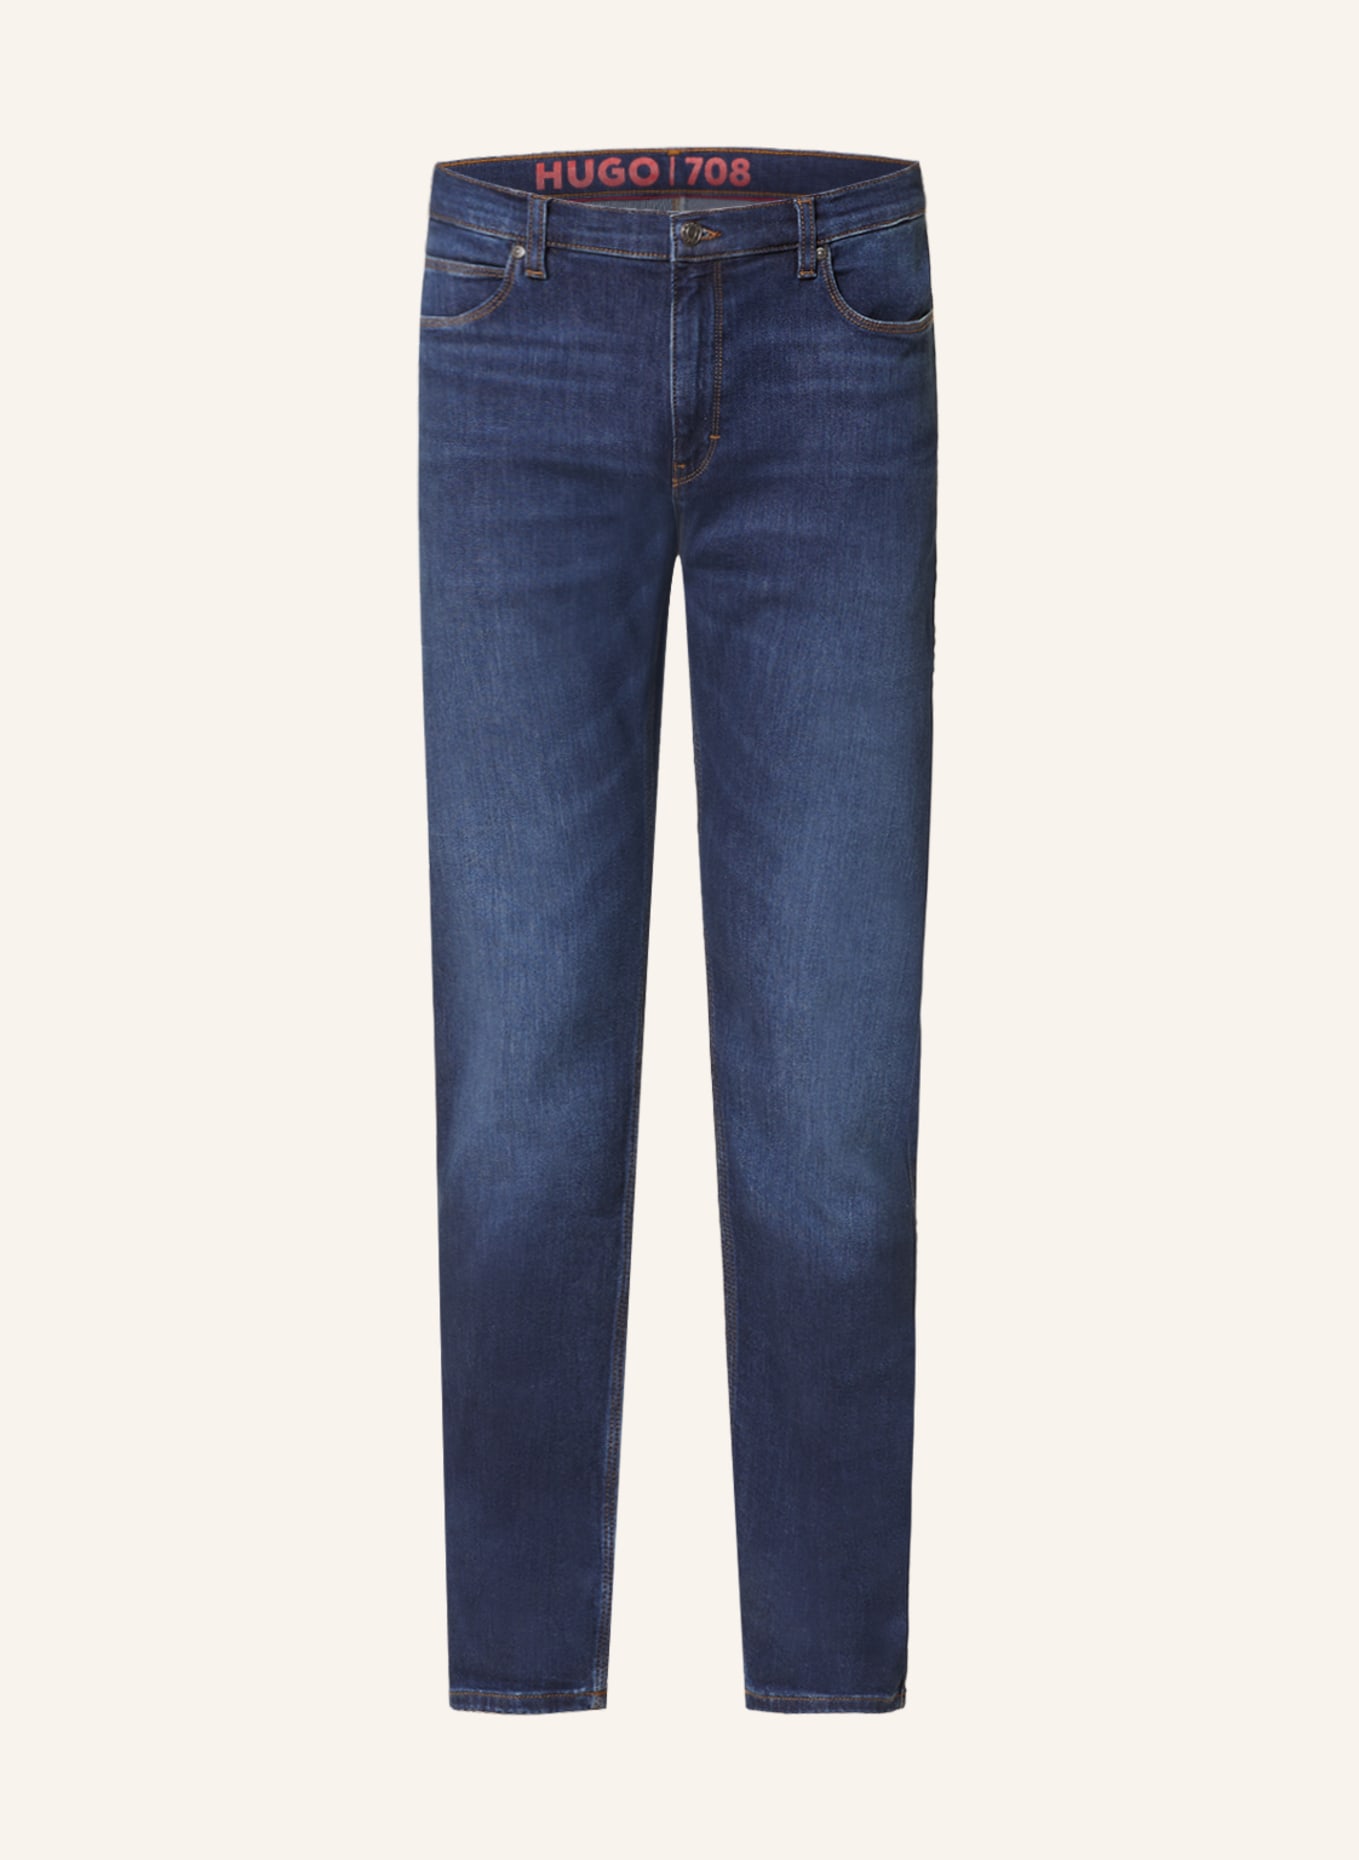 HUGO Jeans HUGO 708 Slim Fit, Farbe: 405 DARK BLUE (Bild 1)